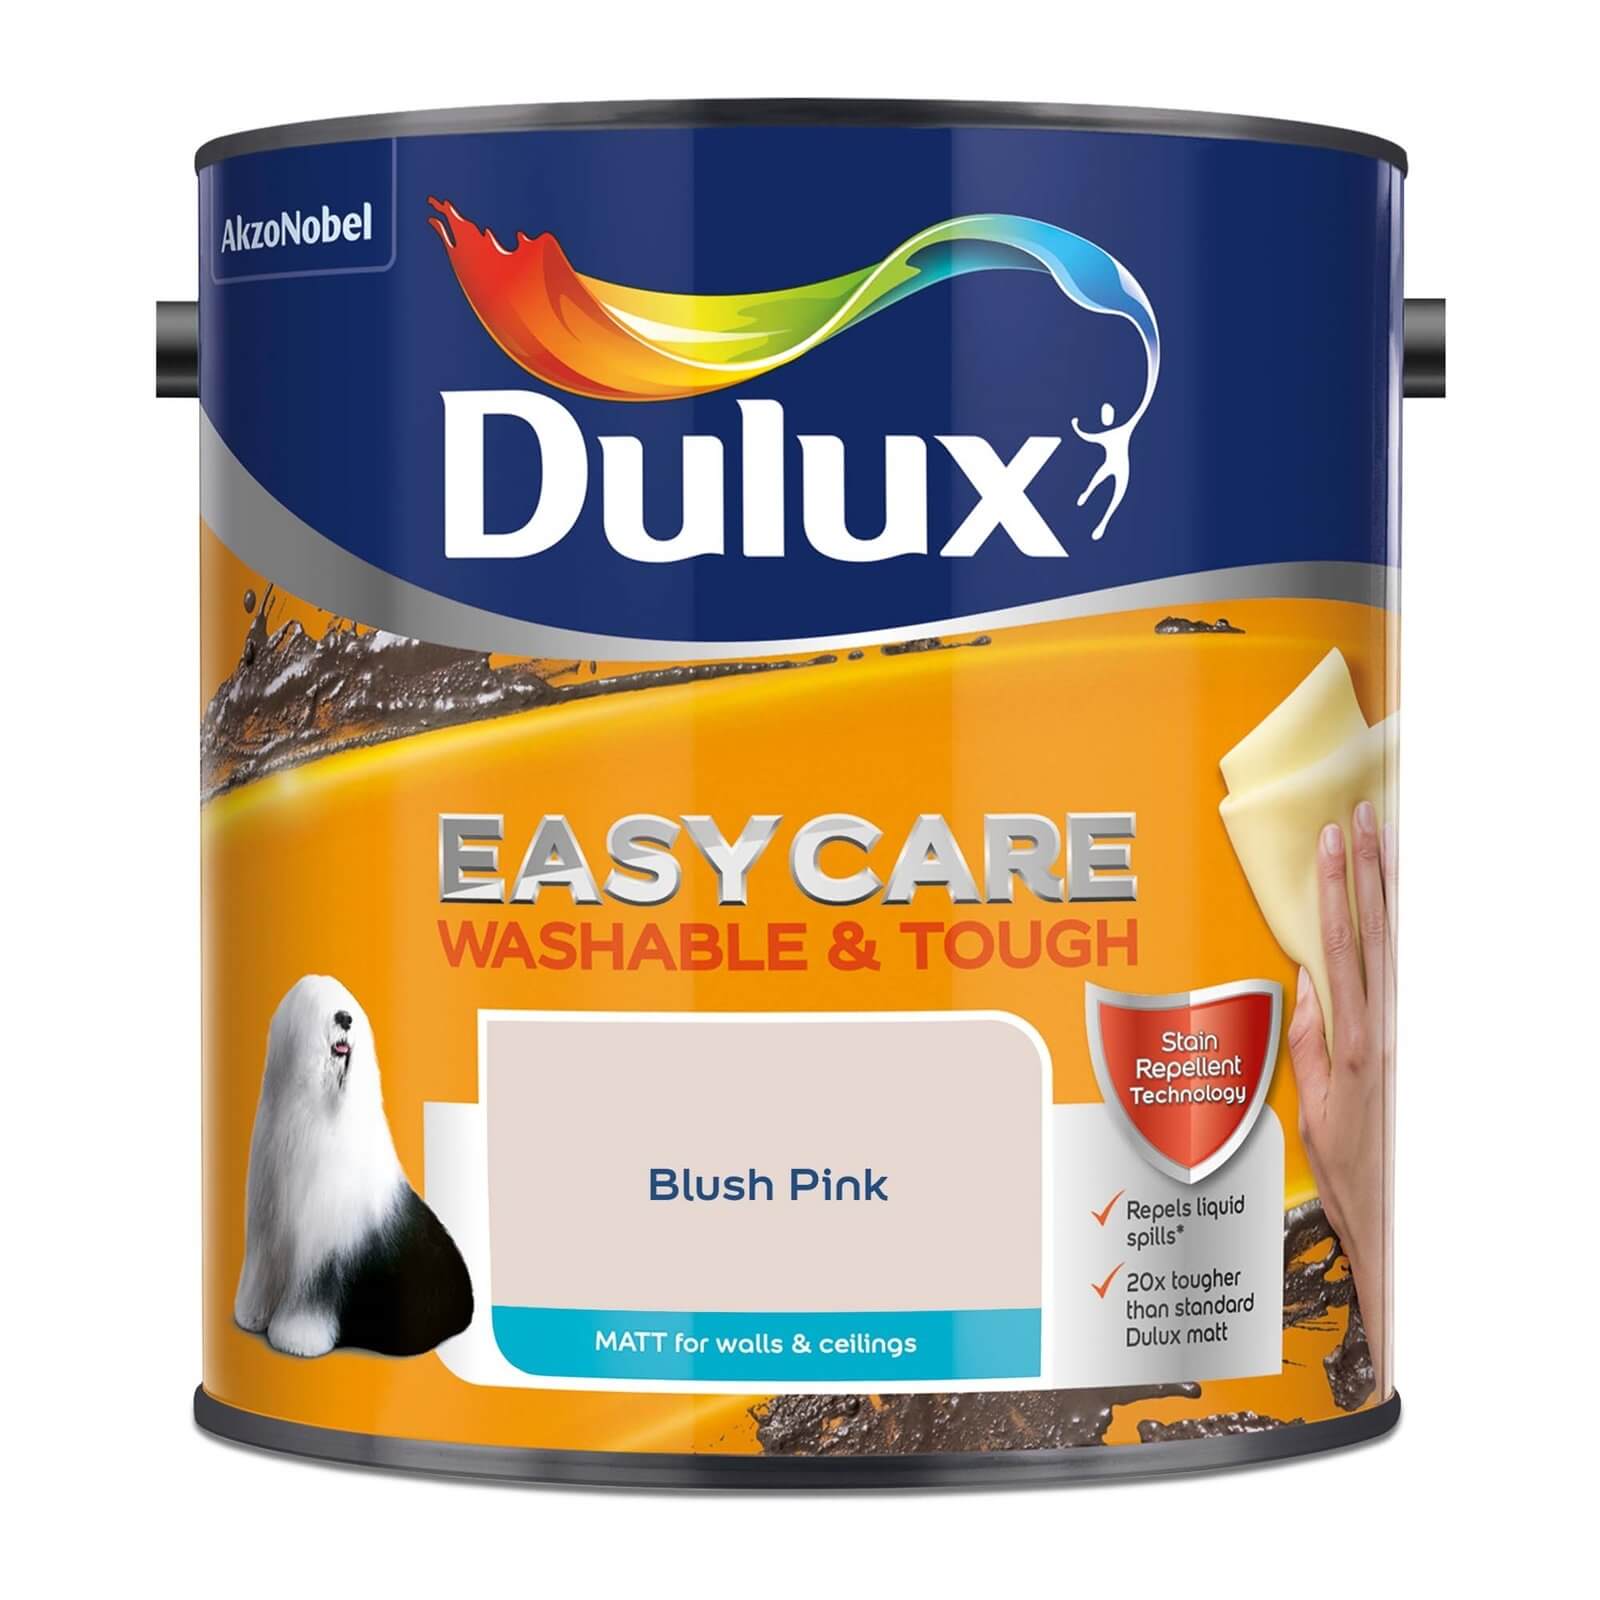 Dulux Easycare Washable & Tough Matt Paint Blush Pink - 2.5L